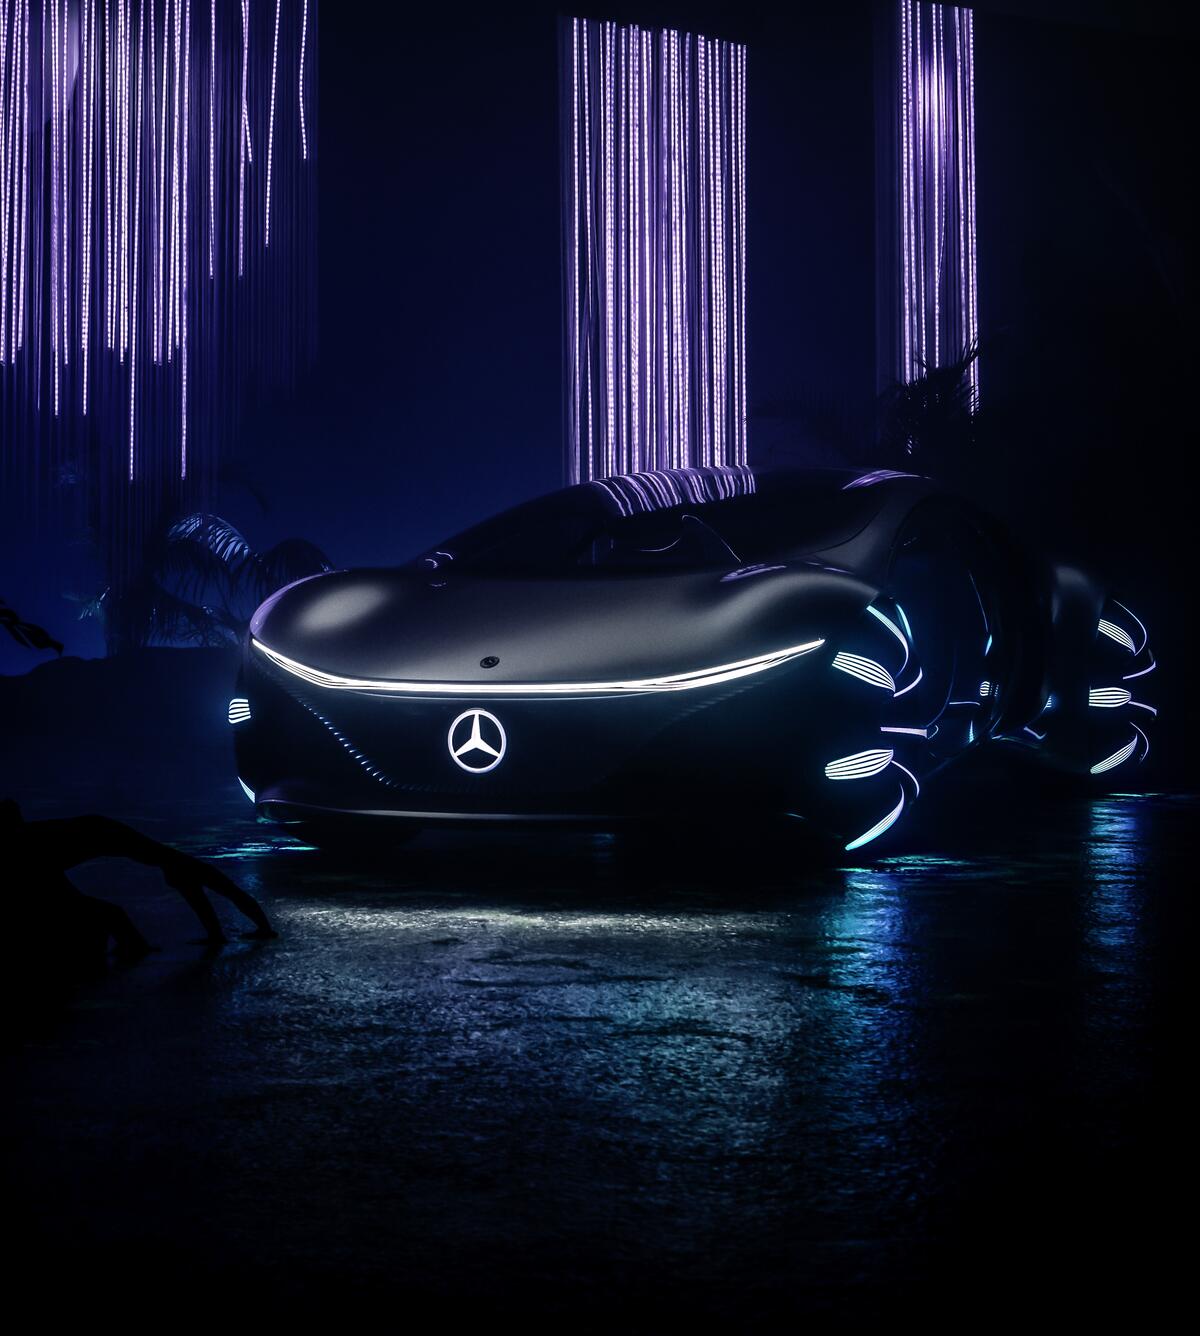 Mercedes-benz vision avtr 2020 in a dark room